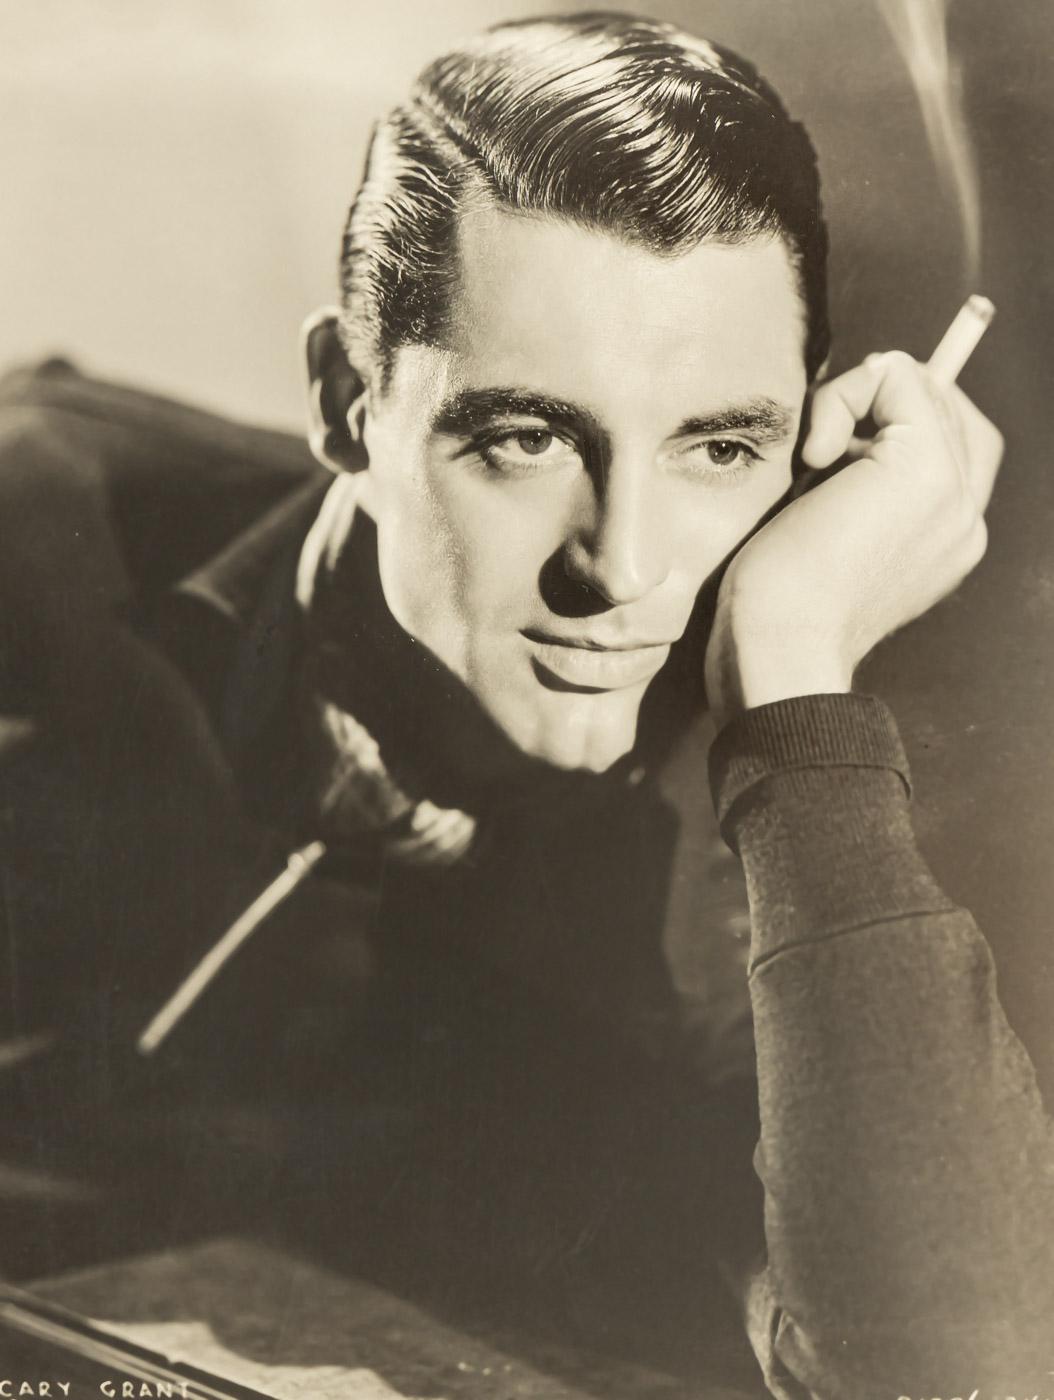 Originales Vintage-Porträt von CARY GRANT. Paramount-Studioporträt aus den 1930er Jahren, das den Schauspieler in jugendlichem Auftreten mit einer Zigarette in der Hand zeigt. Gerahmt und hängefertig mit Passepartout in einem Naturholzrahmen in